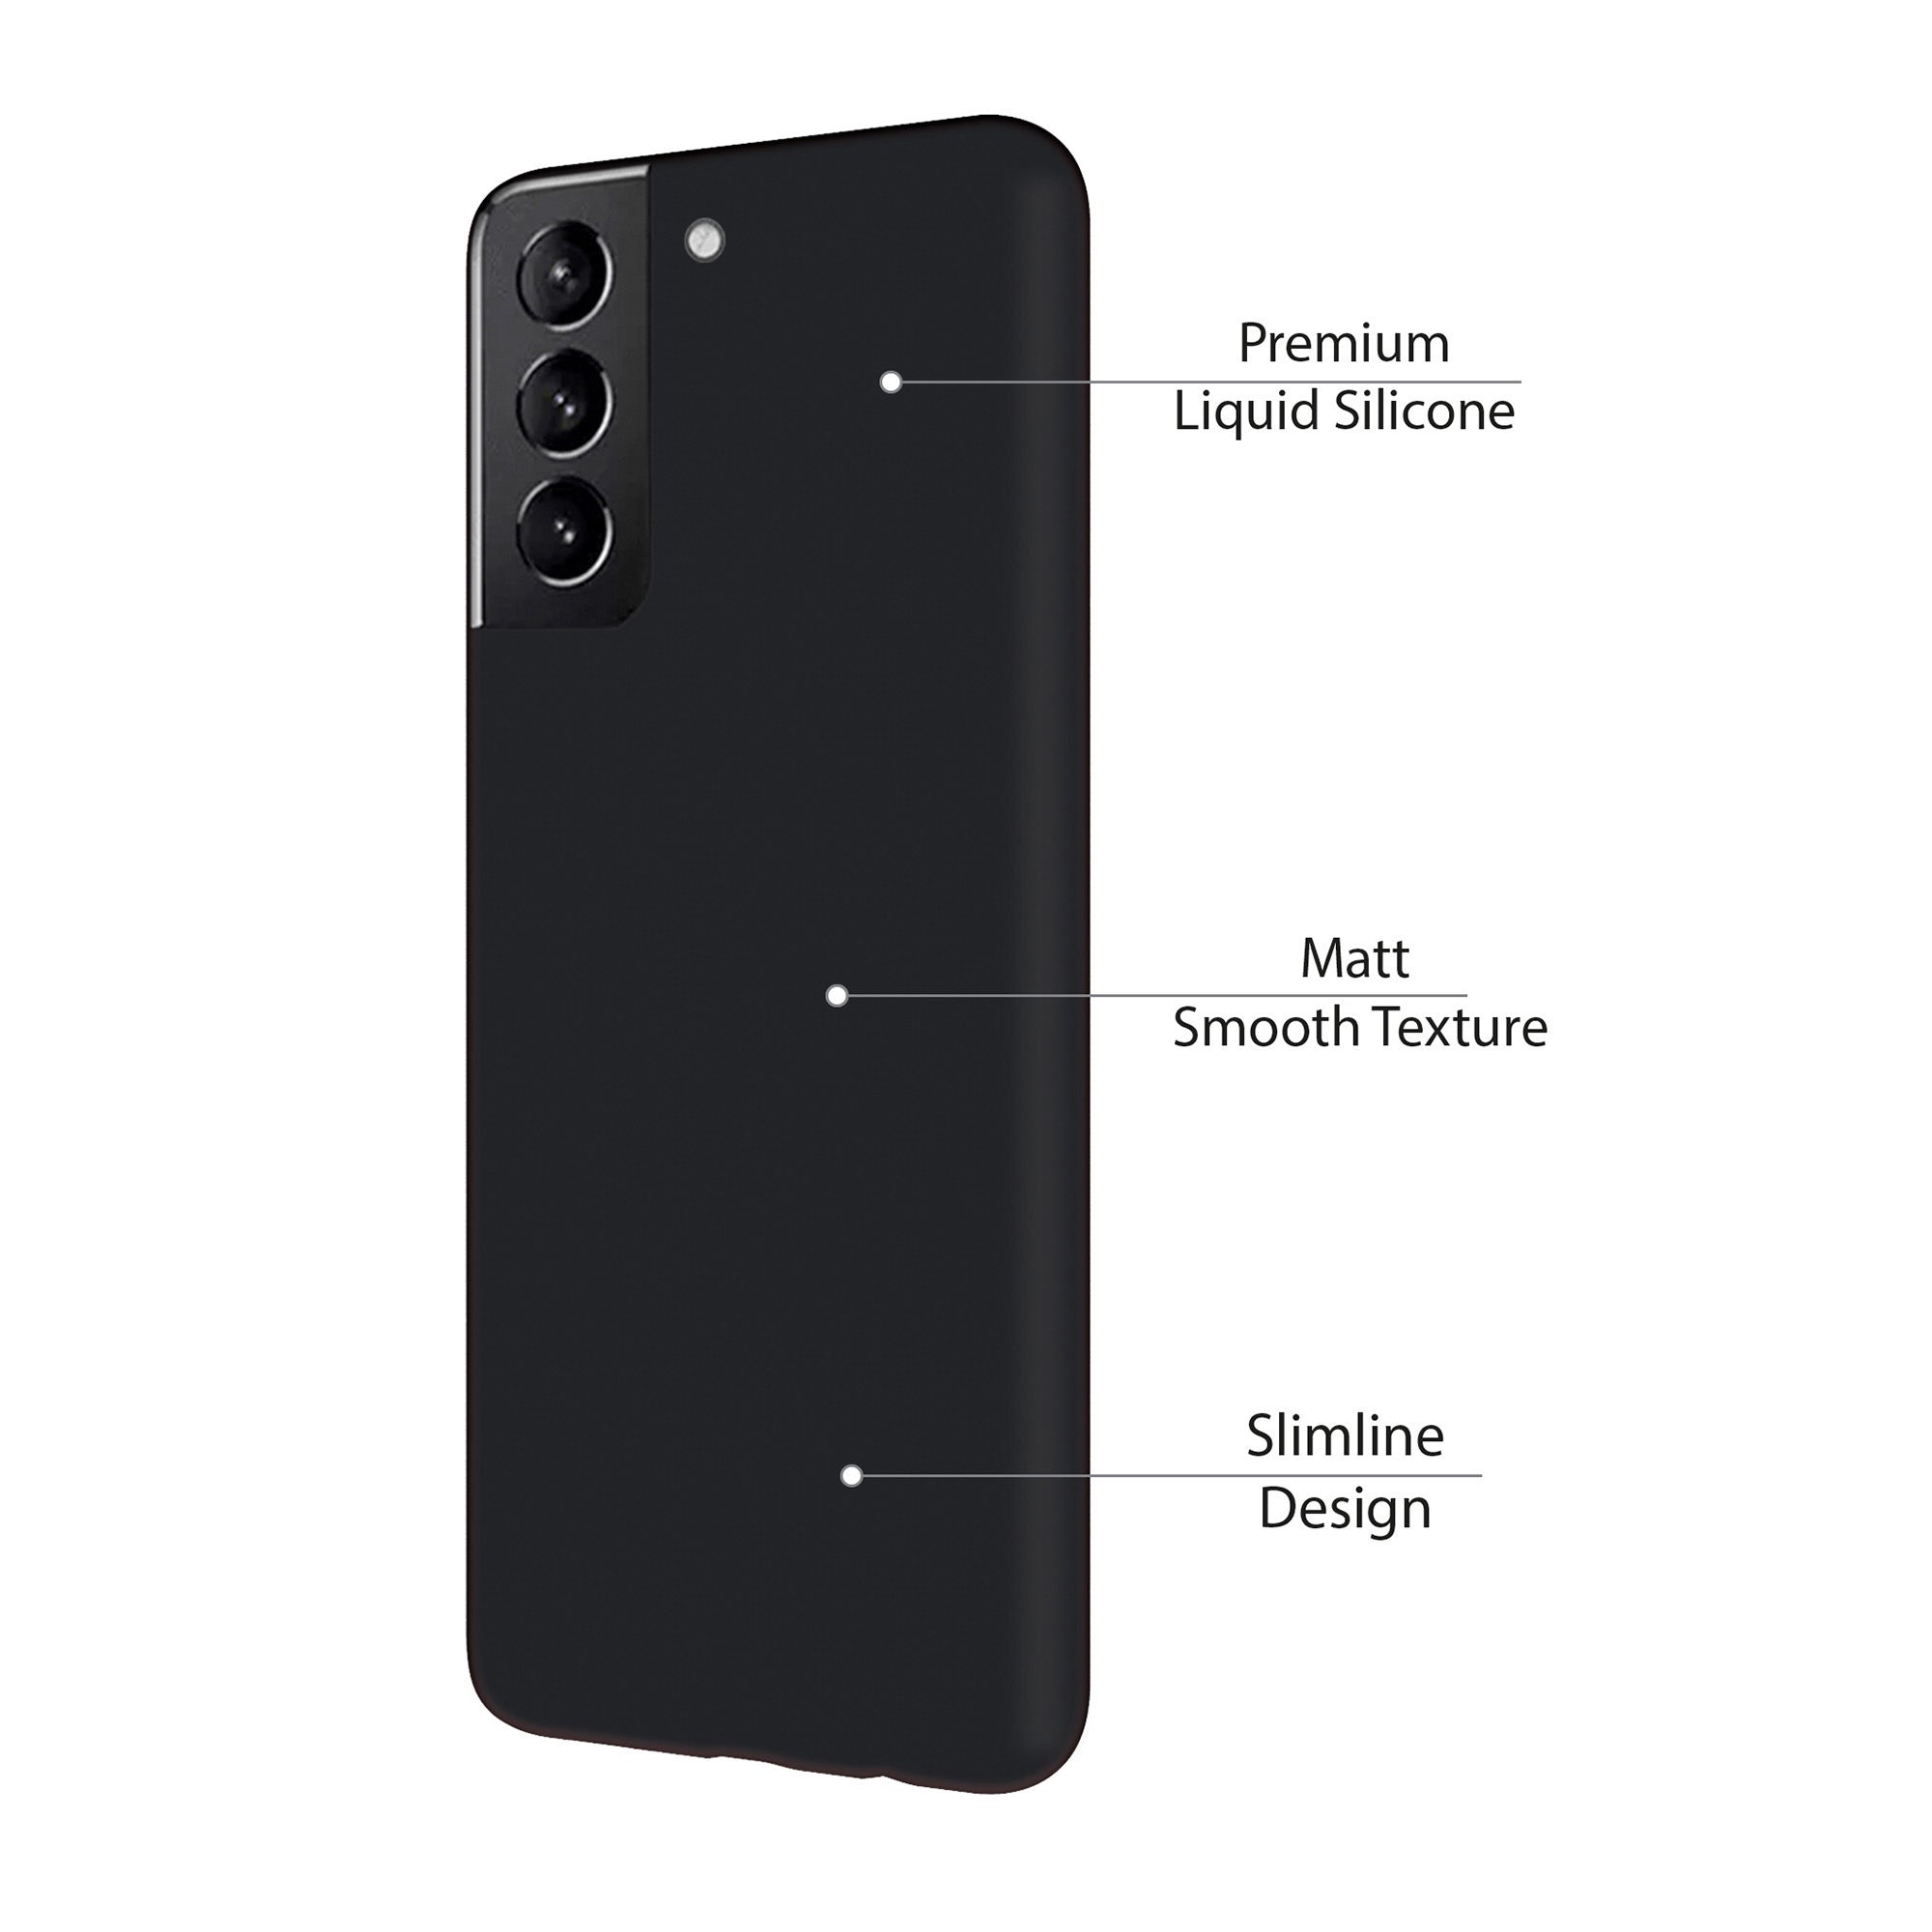 Samsung Galaxy S21+ 5G Uunique Black Liquid Silicone Case - 15-08361